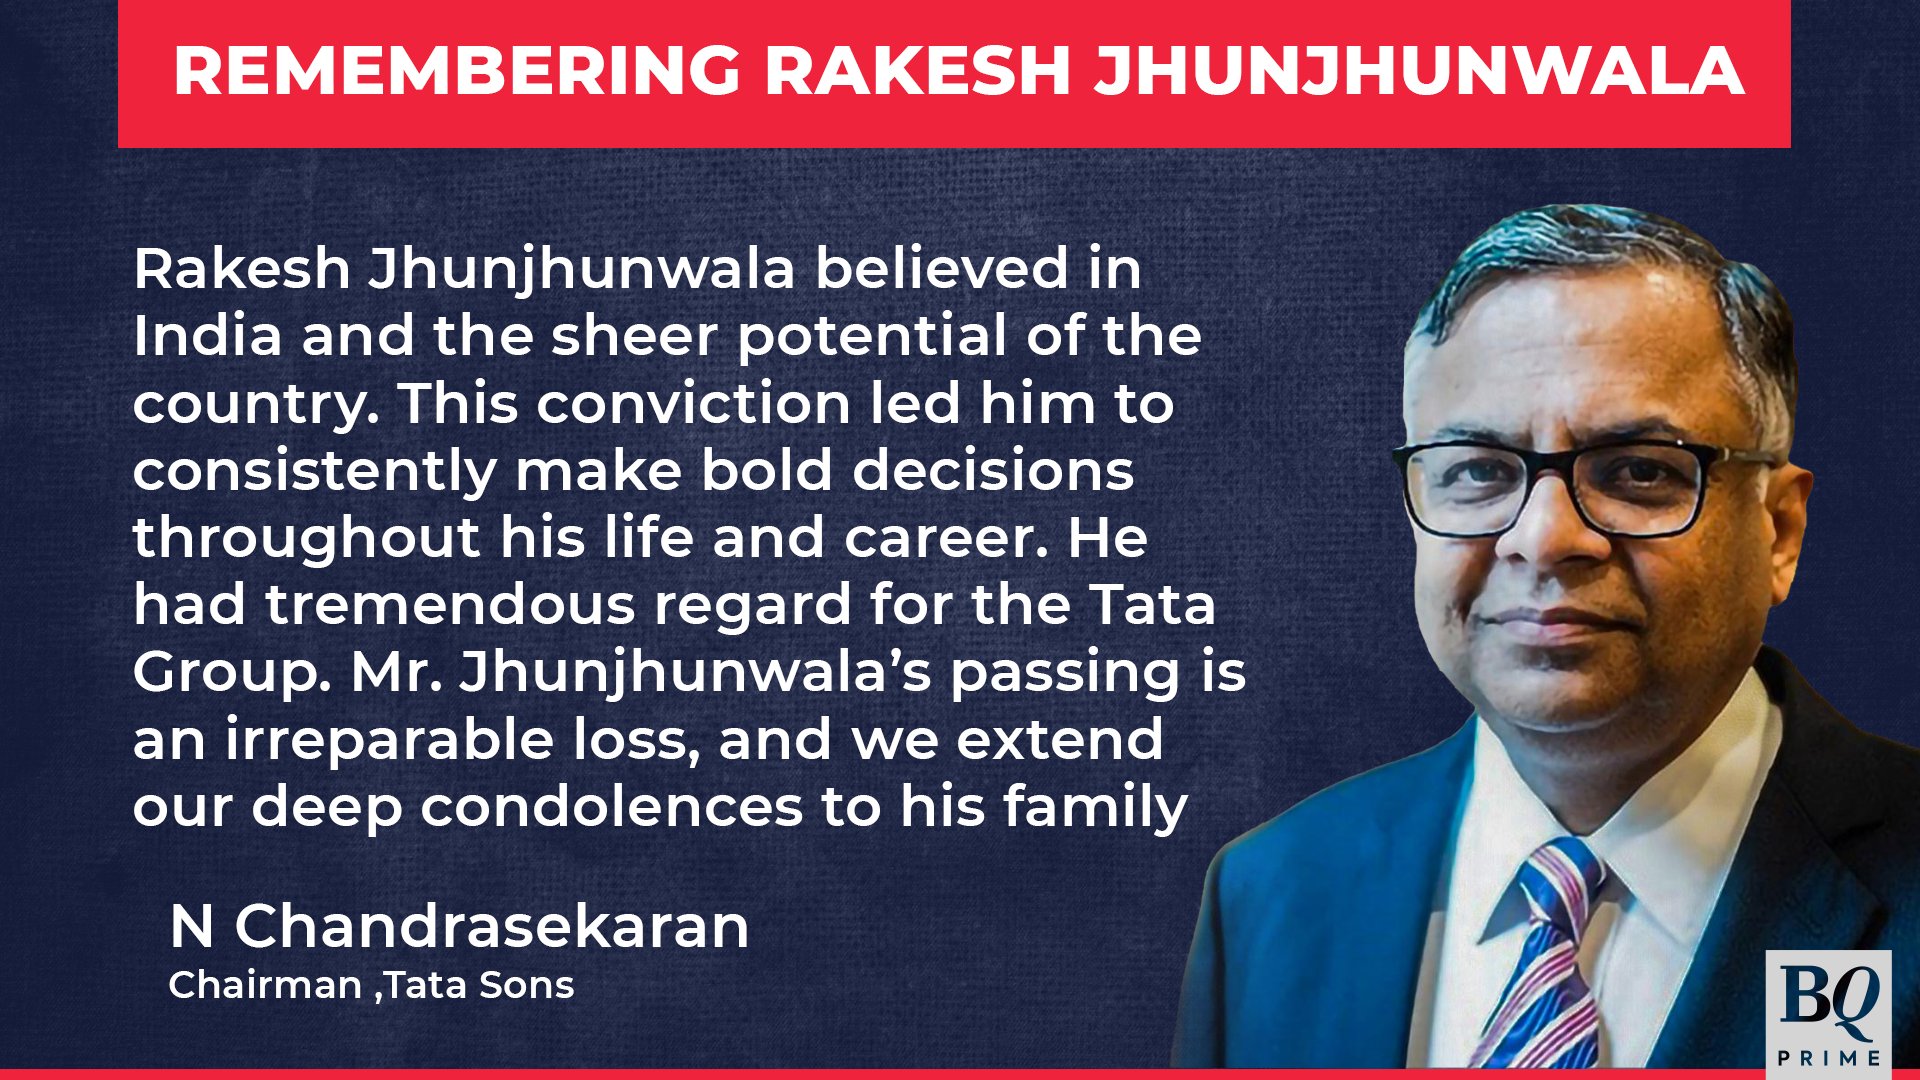 Rakesh Jhunjhunwala news